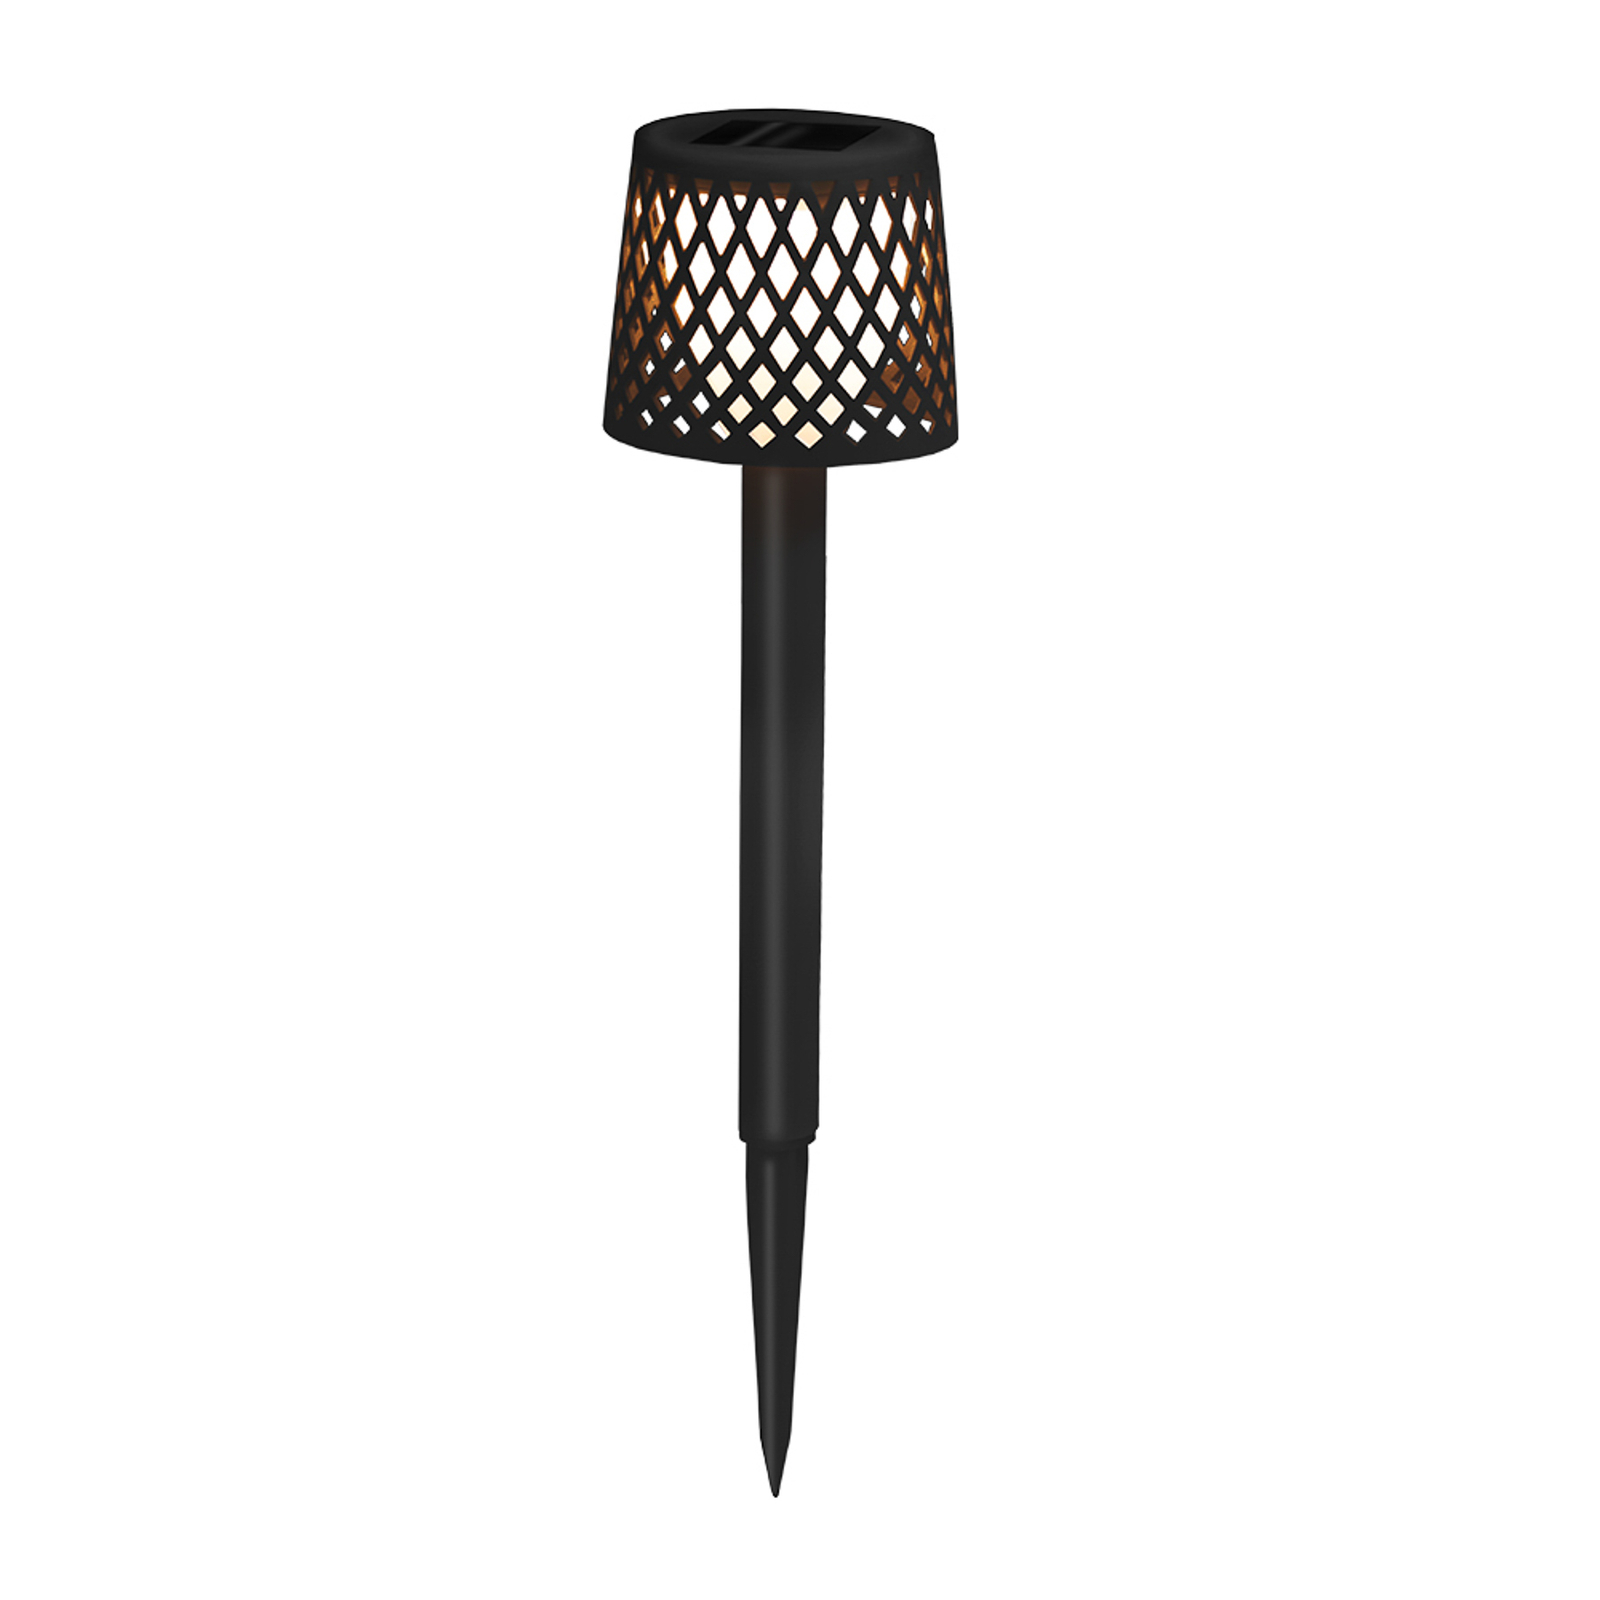 Newgarden LED solární světlo Gretita, černé, zemní hrot, 4 ks